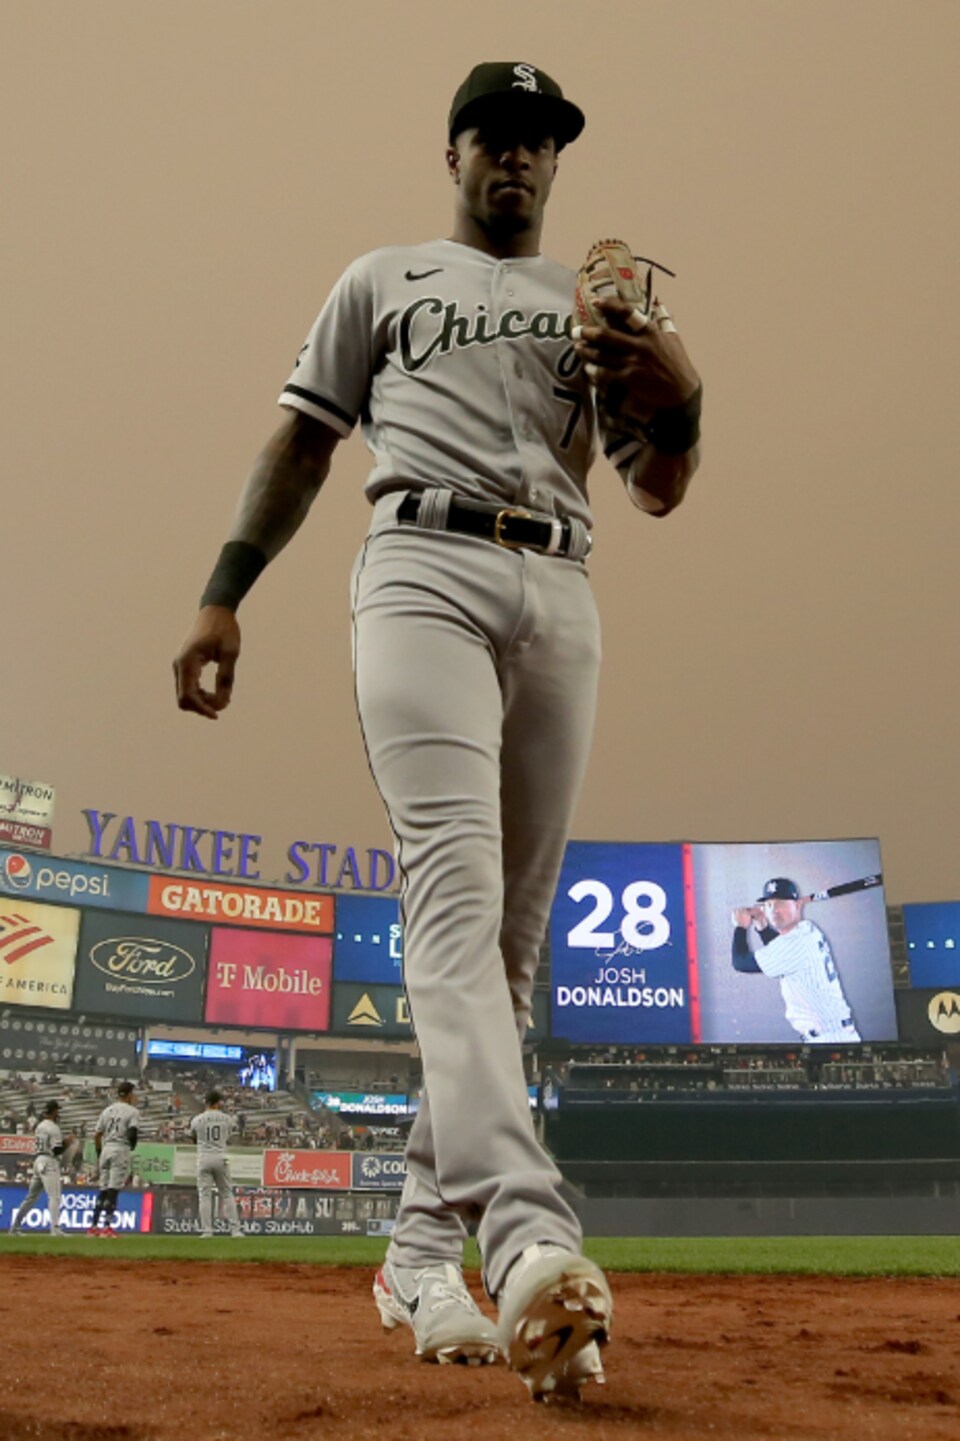 Un joueur de baseball sur fond de ciel gris opaque.